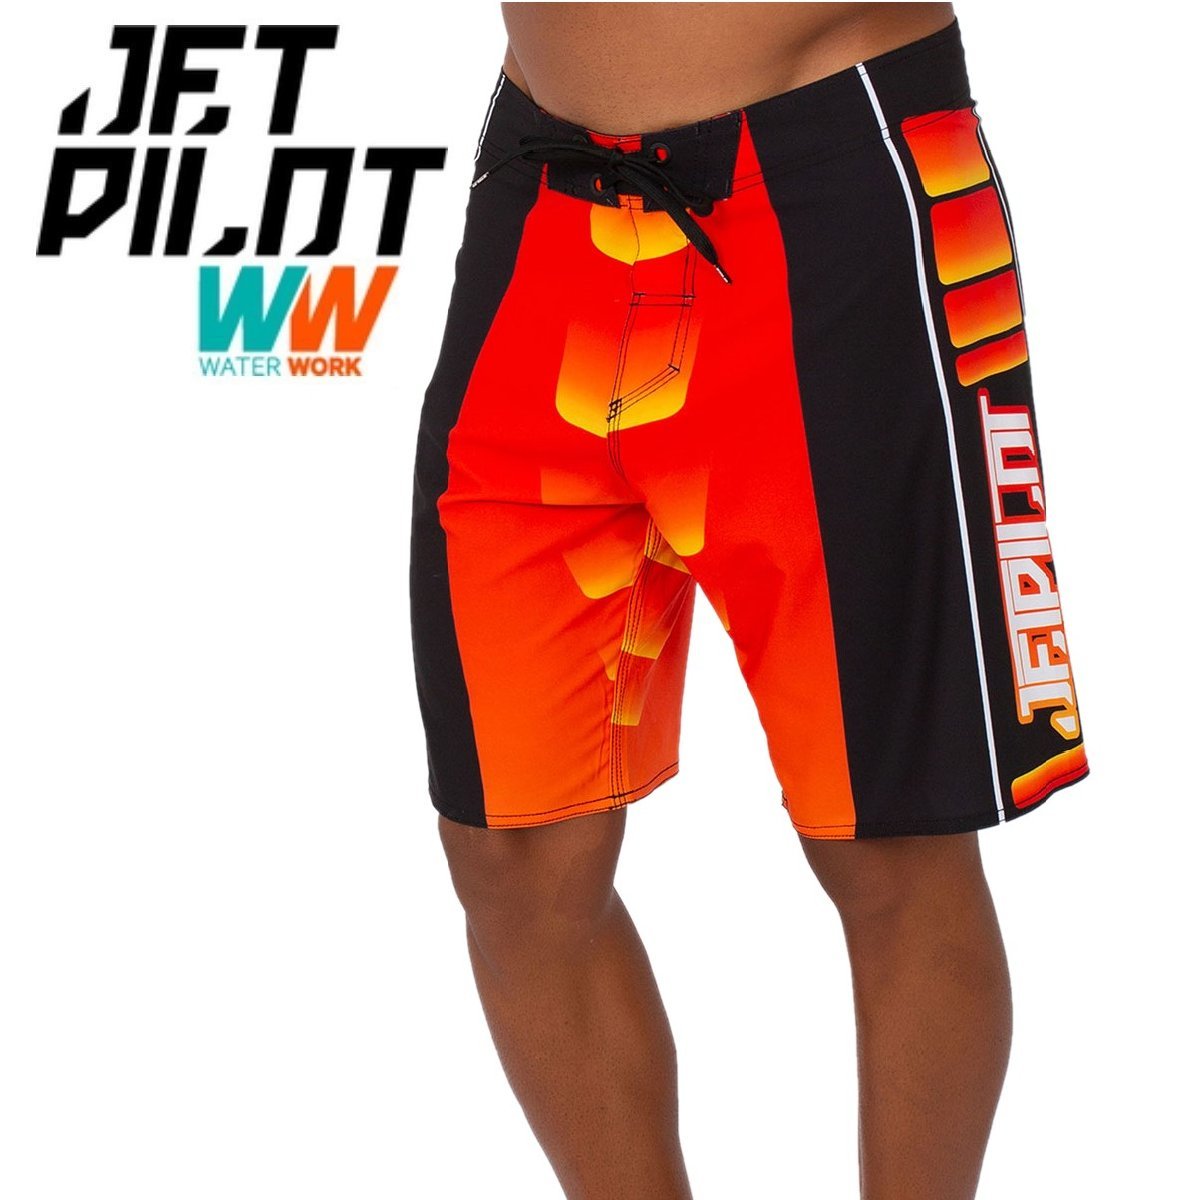 【超目玉】 ポディウム 送料無料 ボードパンツ 2023 JETPILOT ジェットパイロット メンズ 海パン 32 オレンジ/ブラック S22910 ボードショーツ ウエア